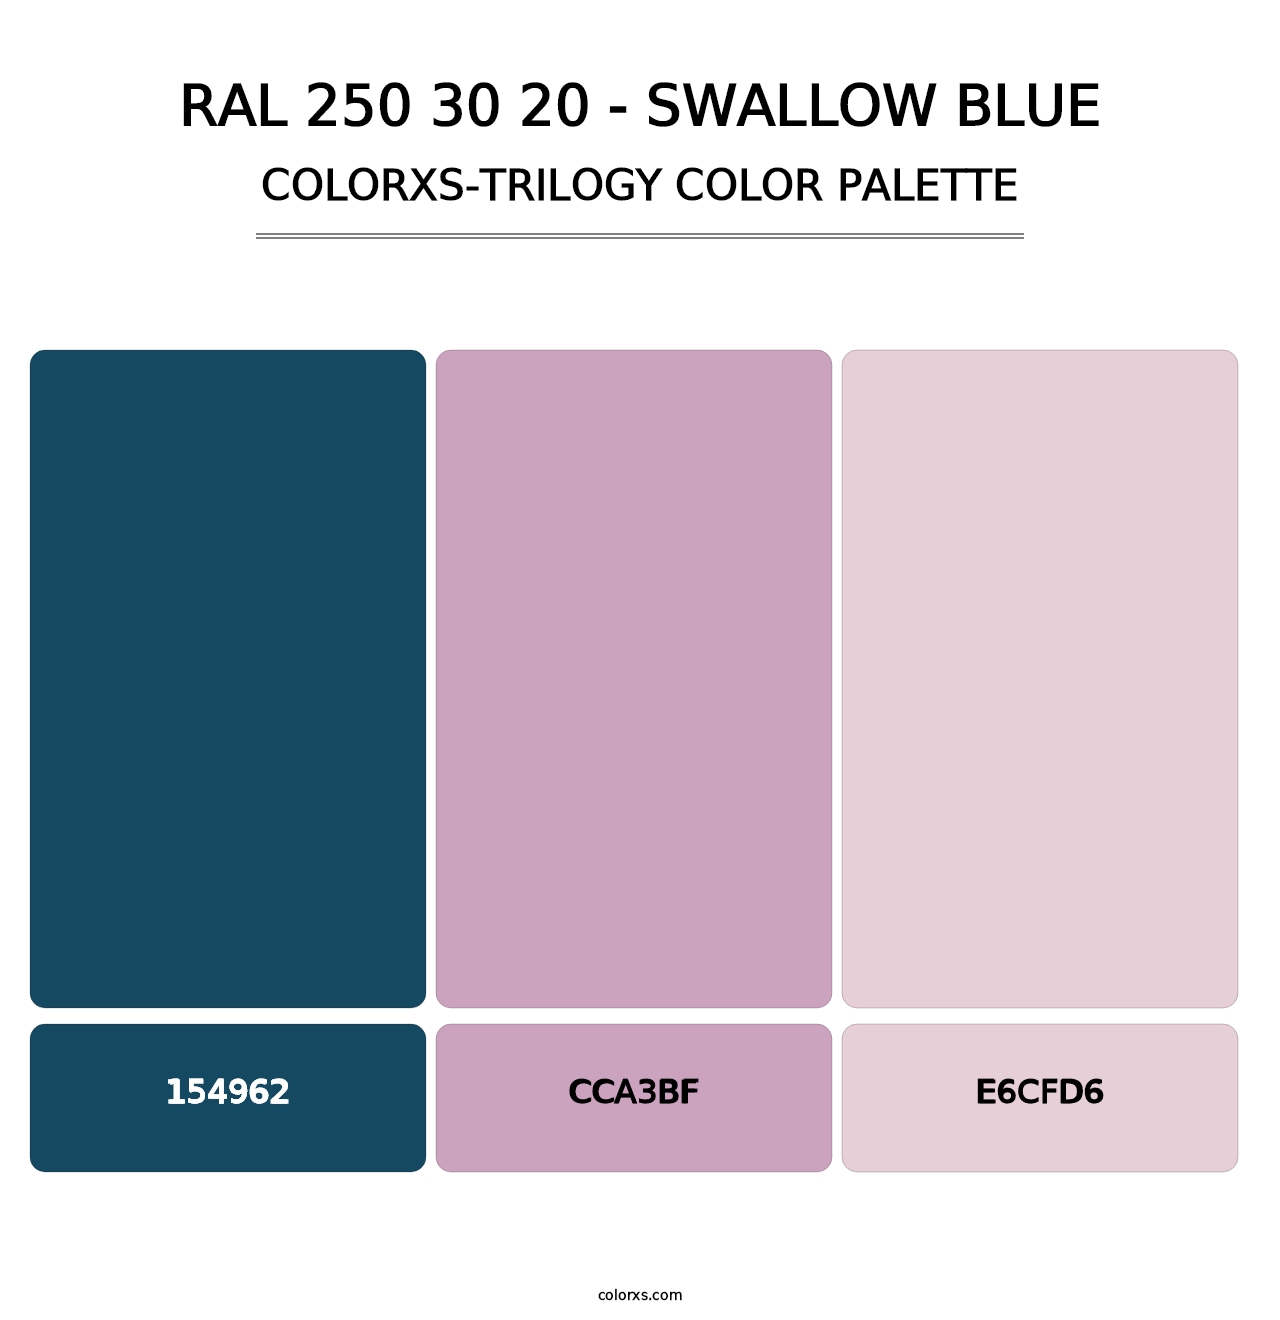 RAL 250 30 20 - Swallow Blue - Colorxs Trilogy Palette